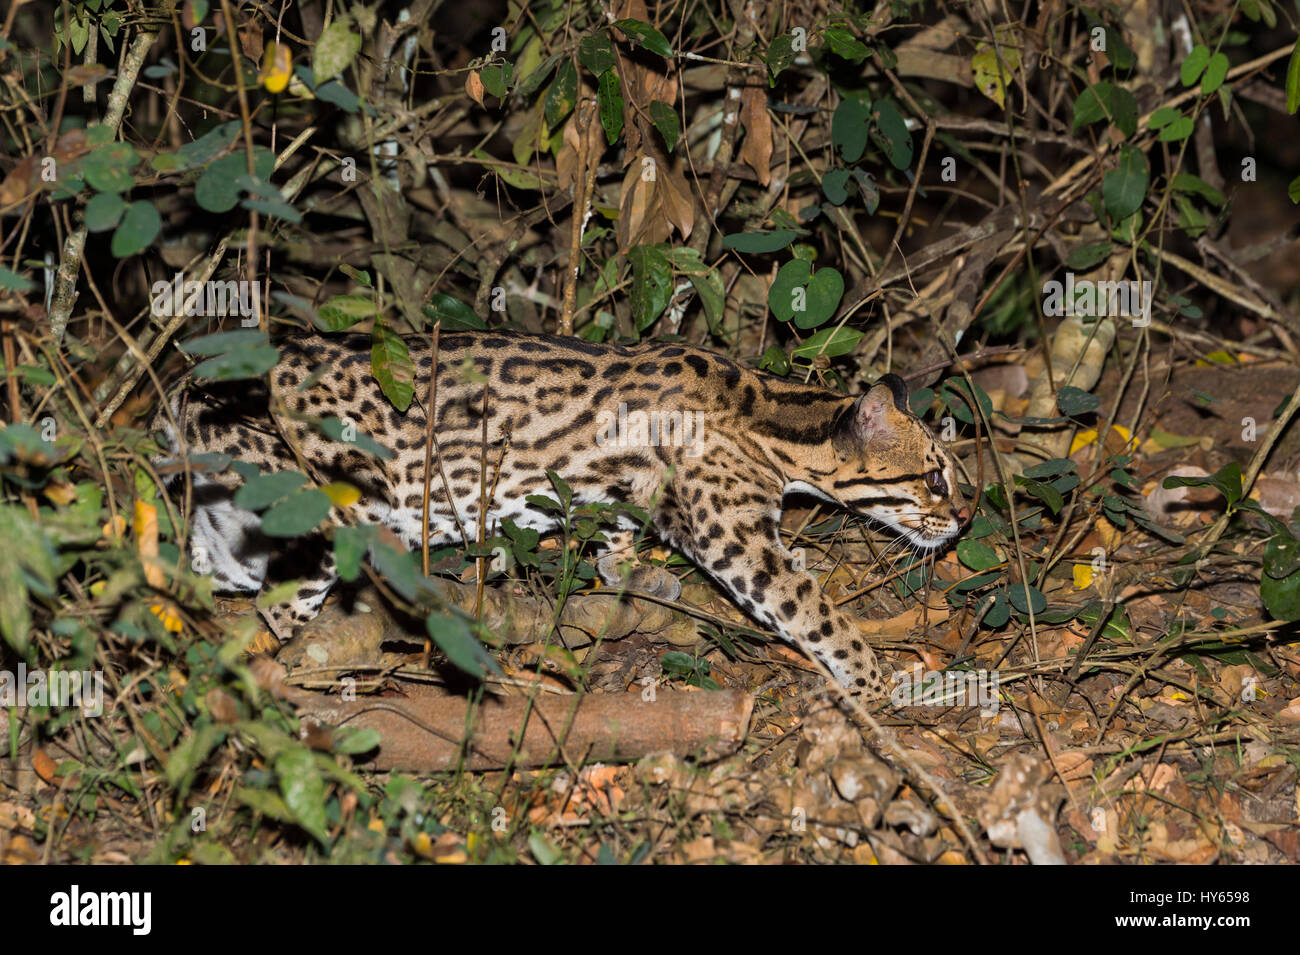 L'Ocelot (Leopardus pardalis) la nuit, Pantanal, Mato Grosso, Brésil Banque D'Images